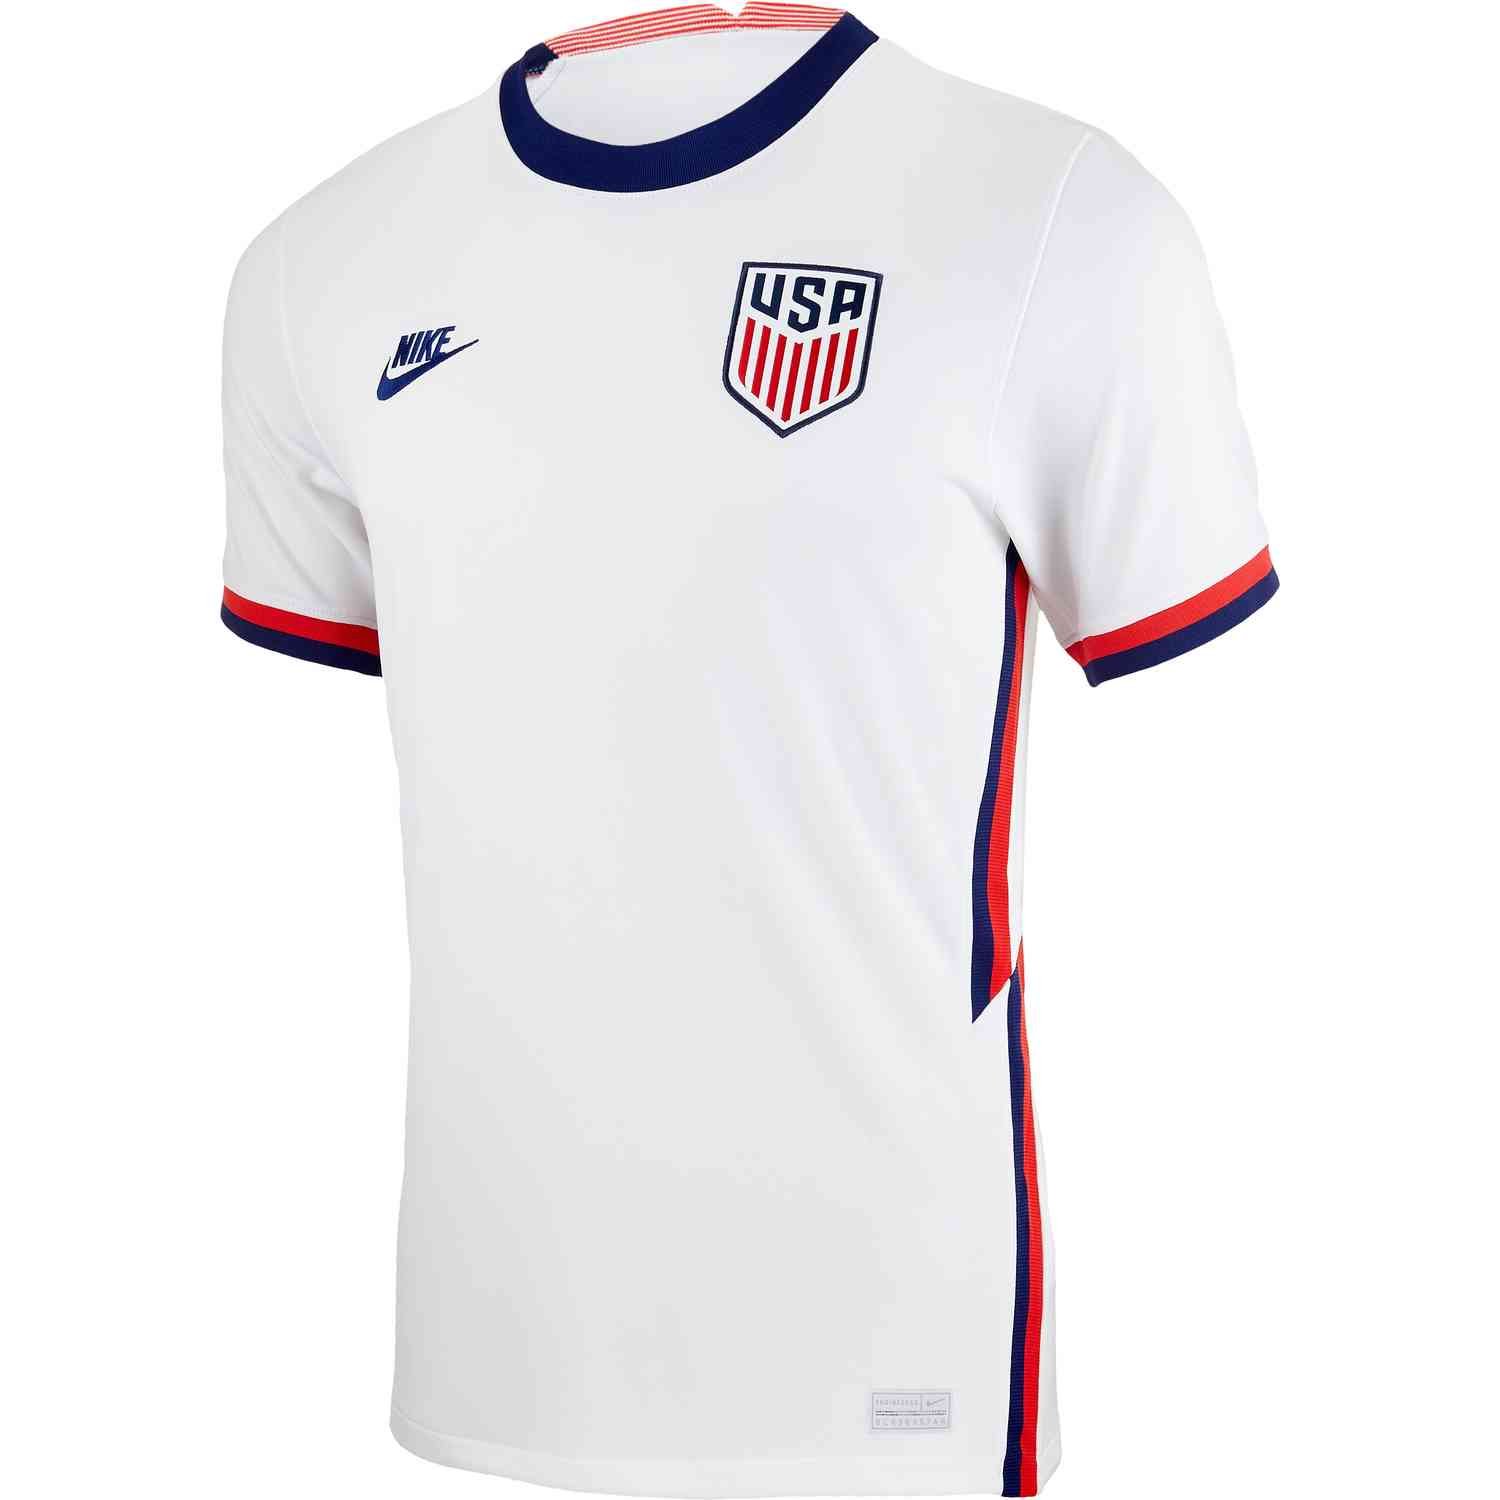 us soccer 2020 kit